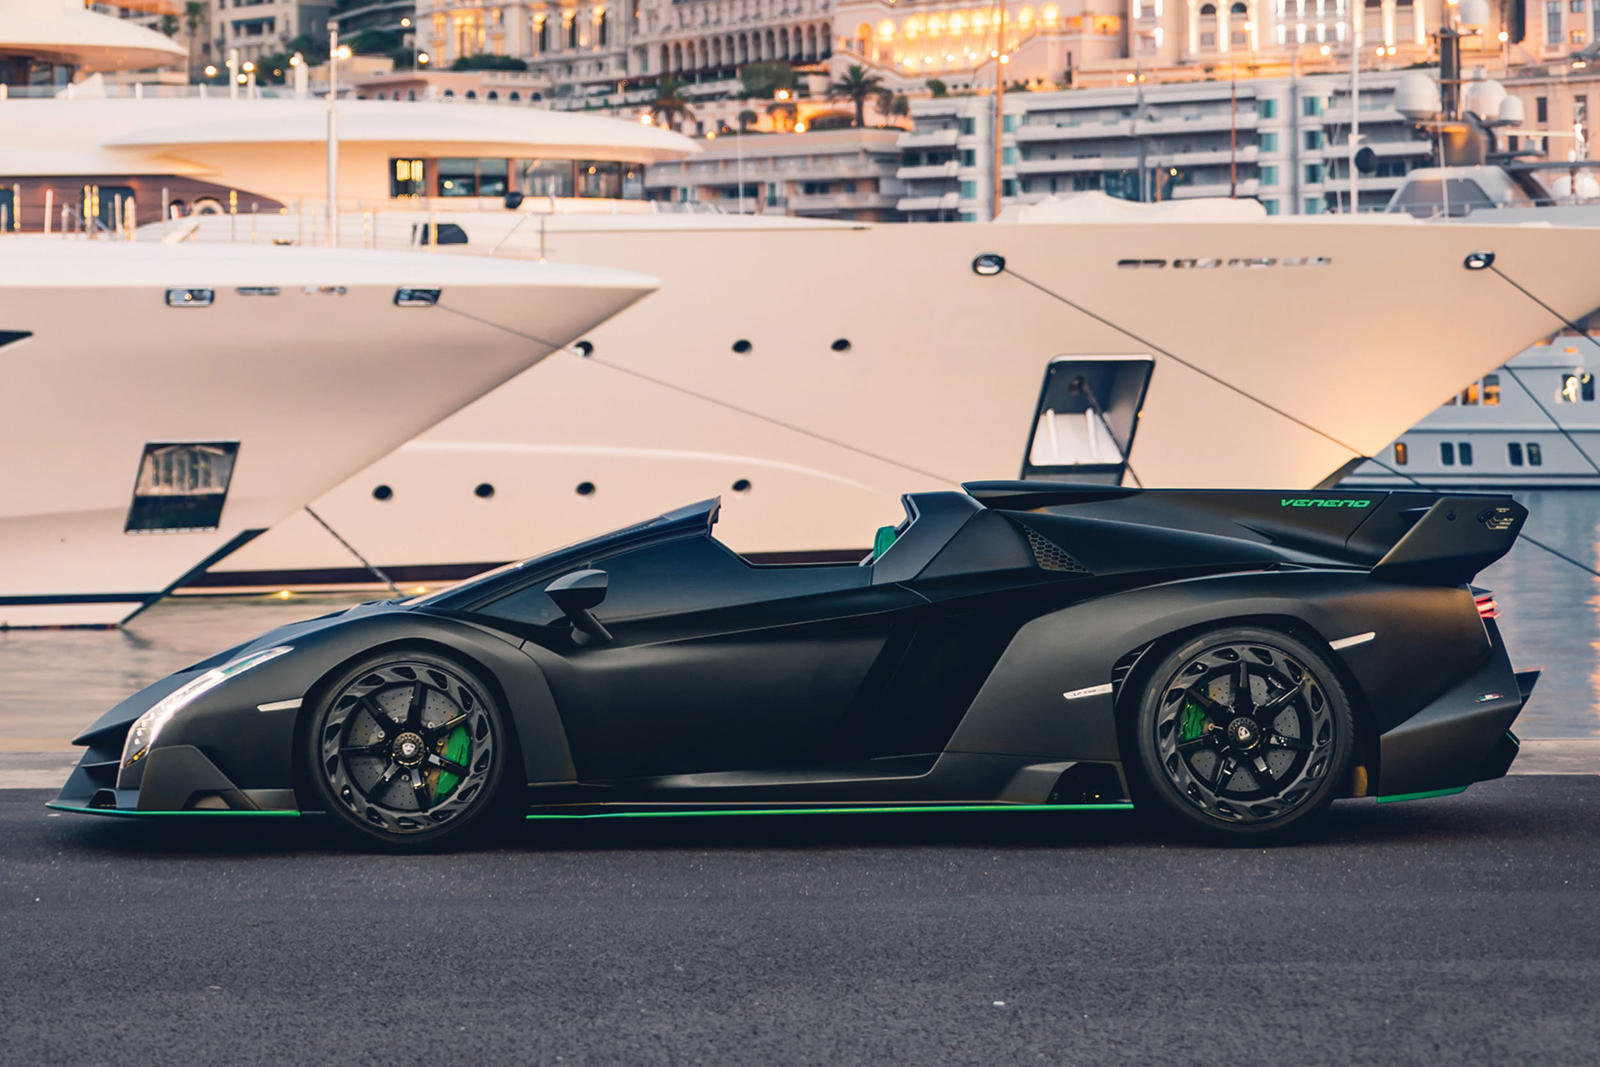  Side profile of a black Lamborghini Veneno Roadster